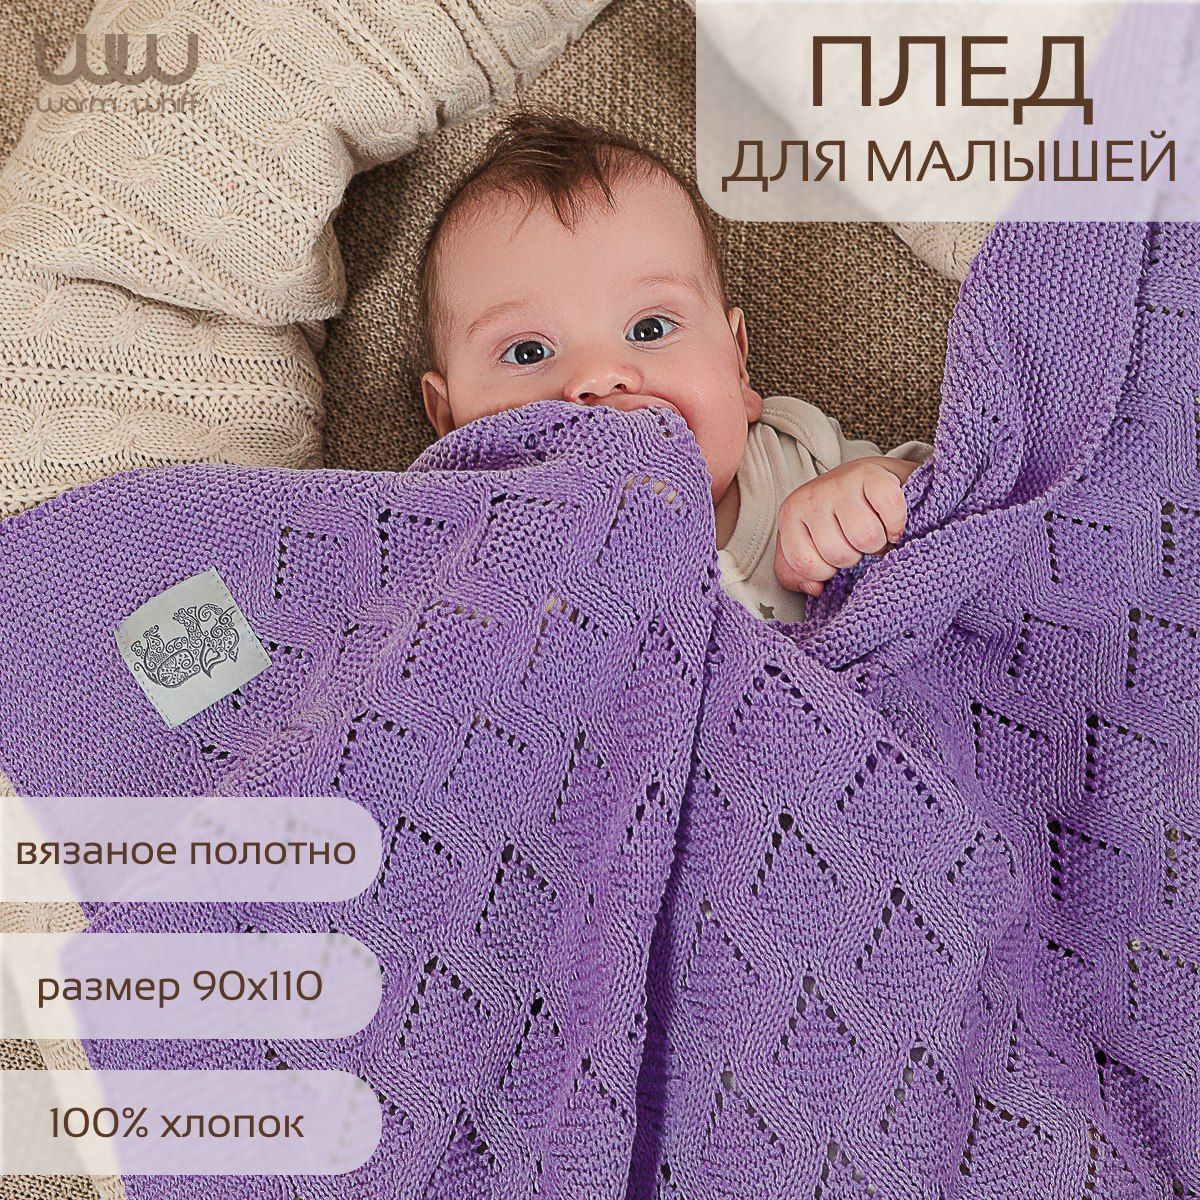 Детский плед, одеяло для новорожденных, покрывало на кровать, плед в коляску и на пикник